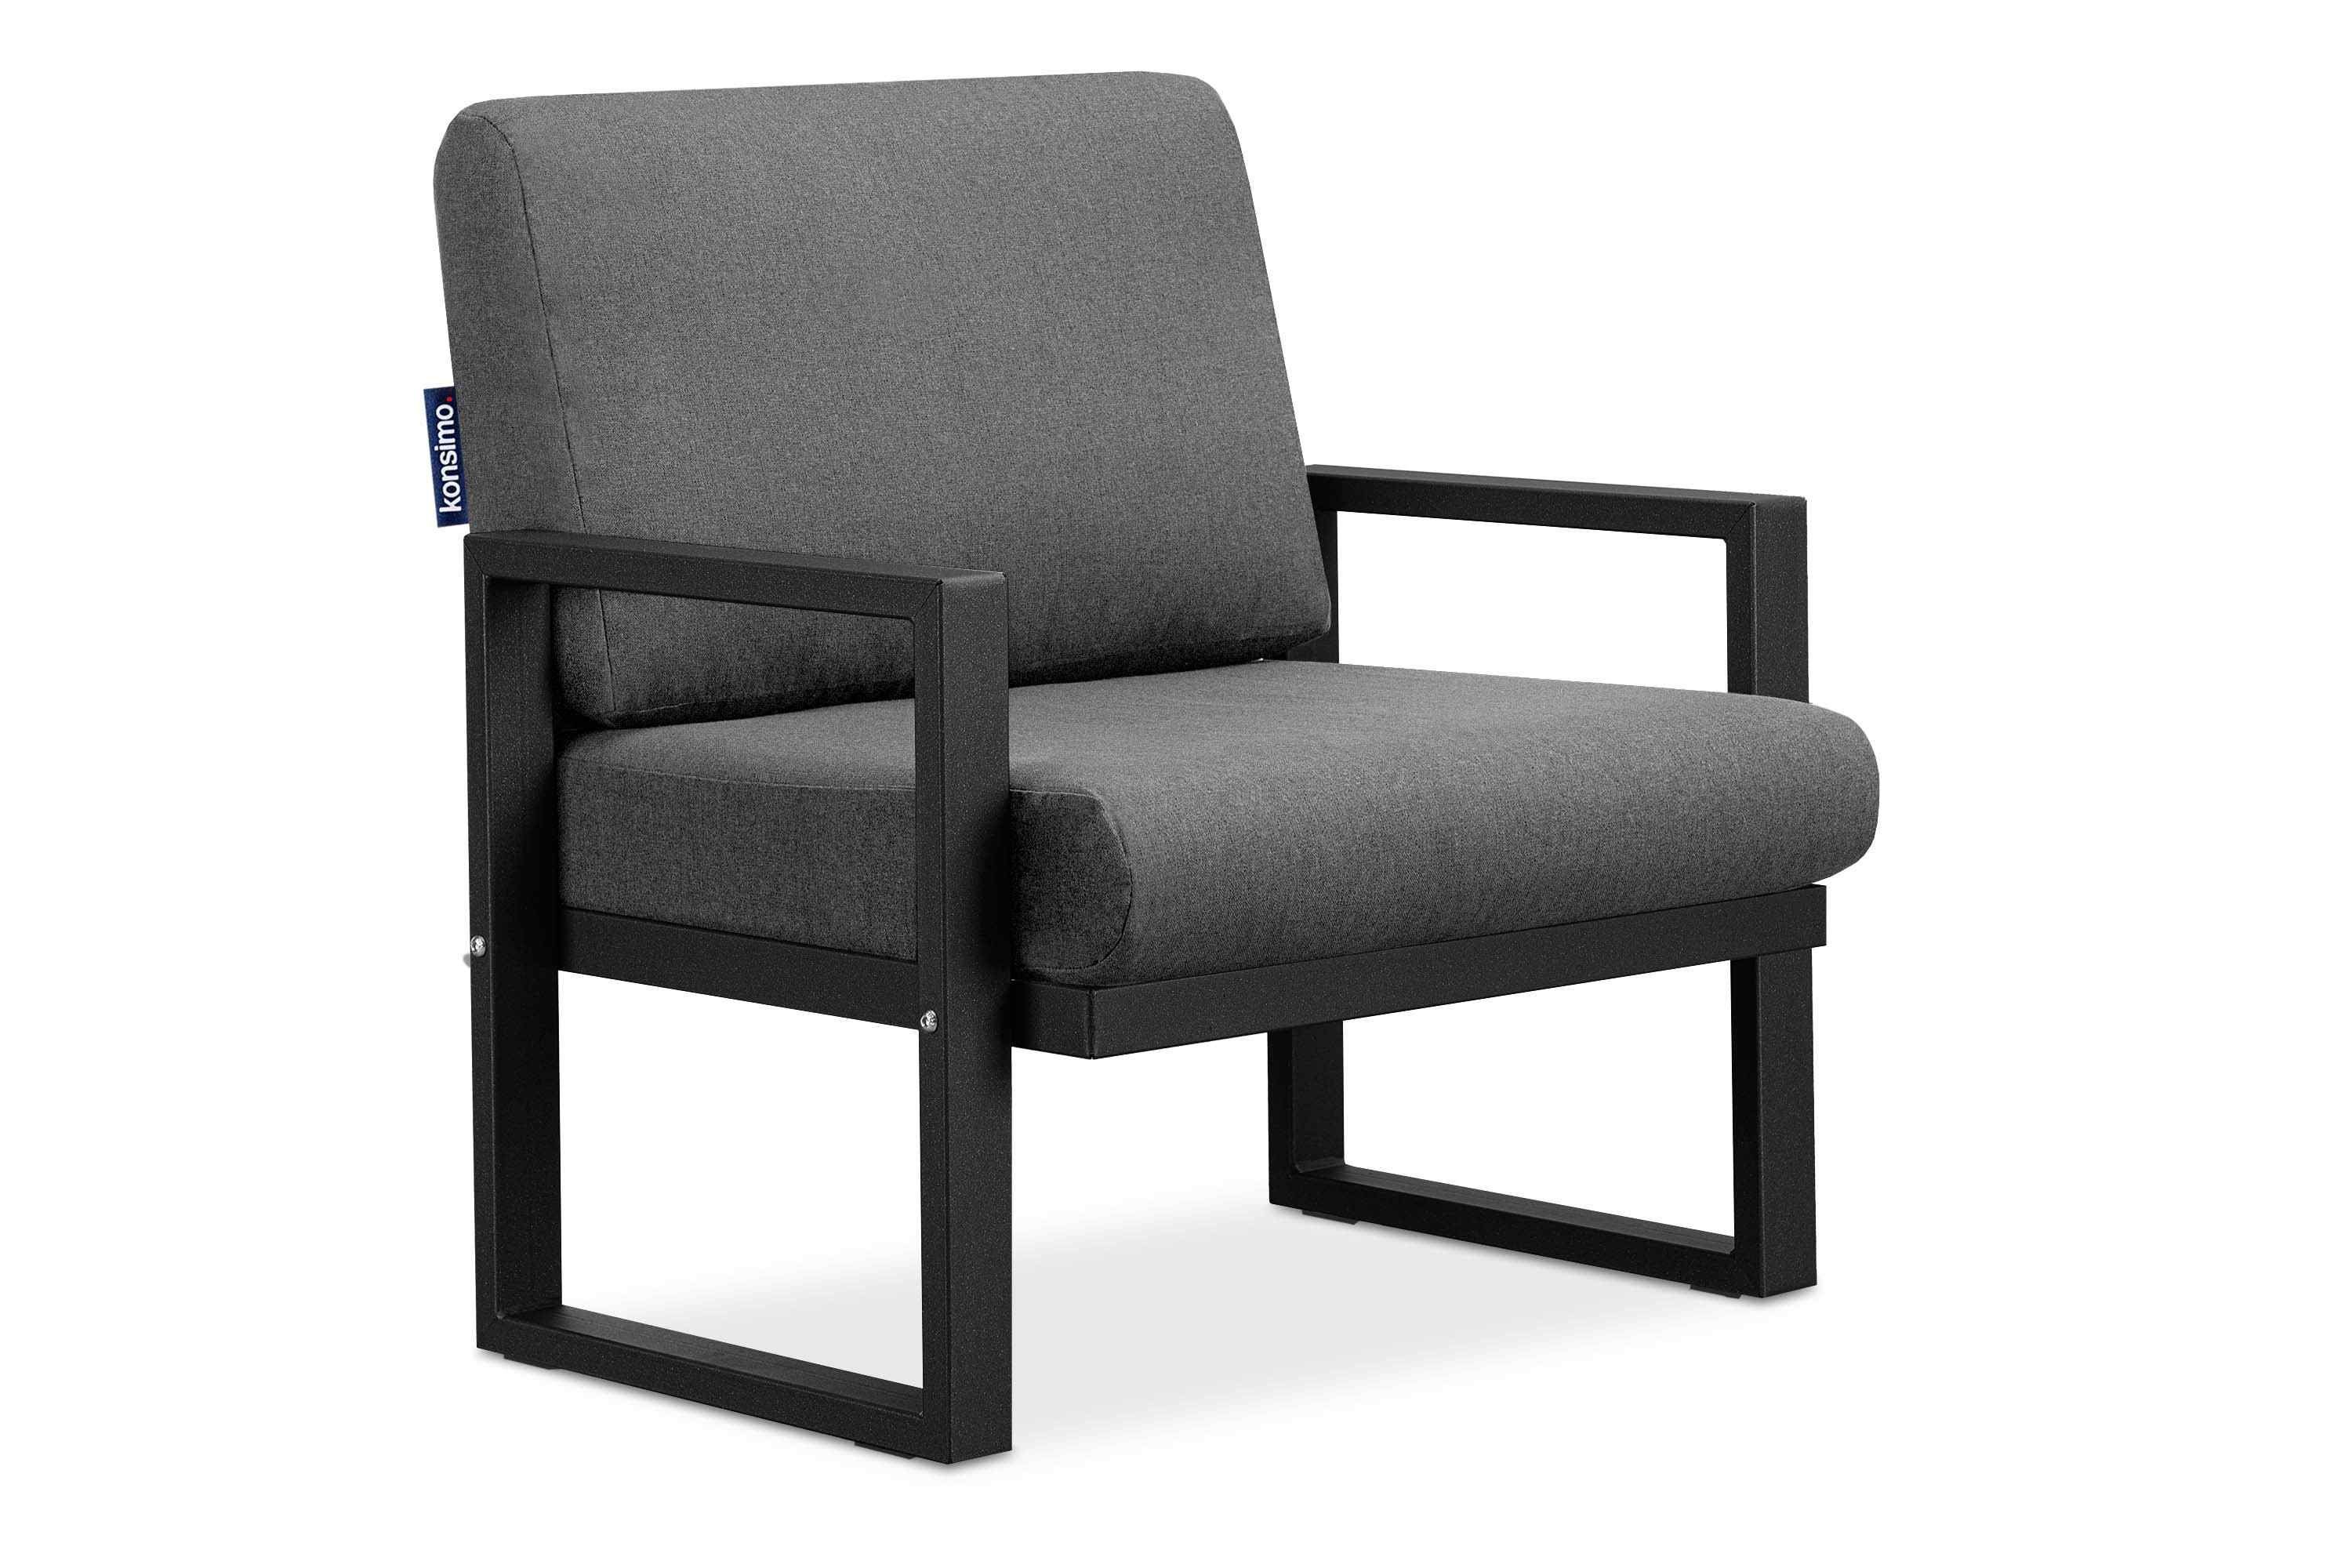 Konsimo Gartensessel FRENA Garten-Sessel (1x Sessel), pflegeleicht, bequeme Sitz- und Rückenkissen, schmutz- und wasserabweisend, UV-Beständigkeit schwarz / grau